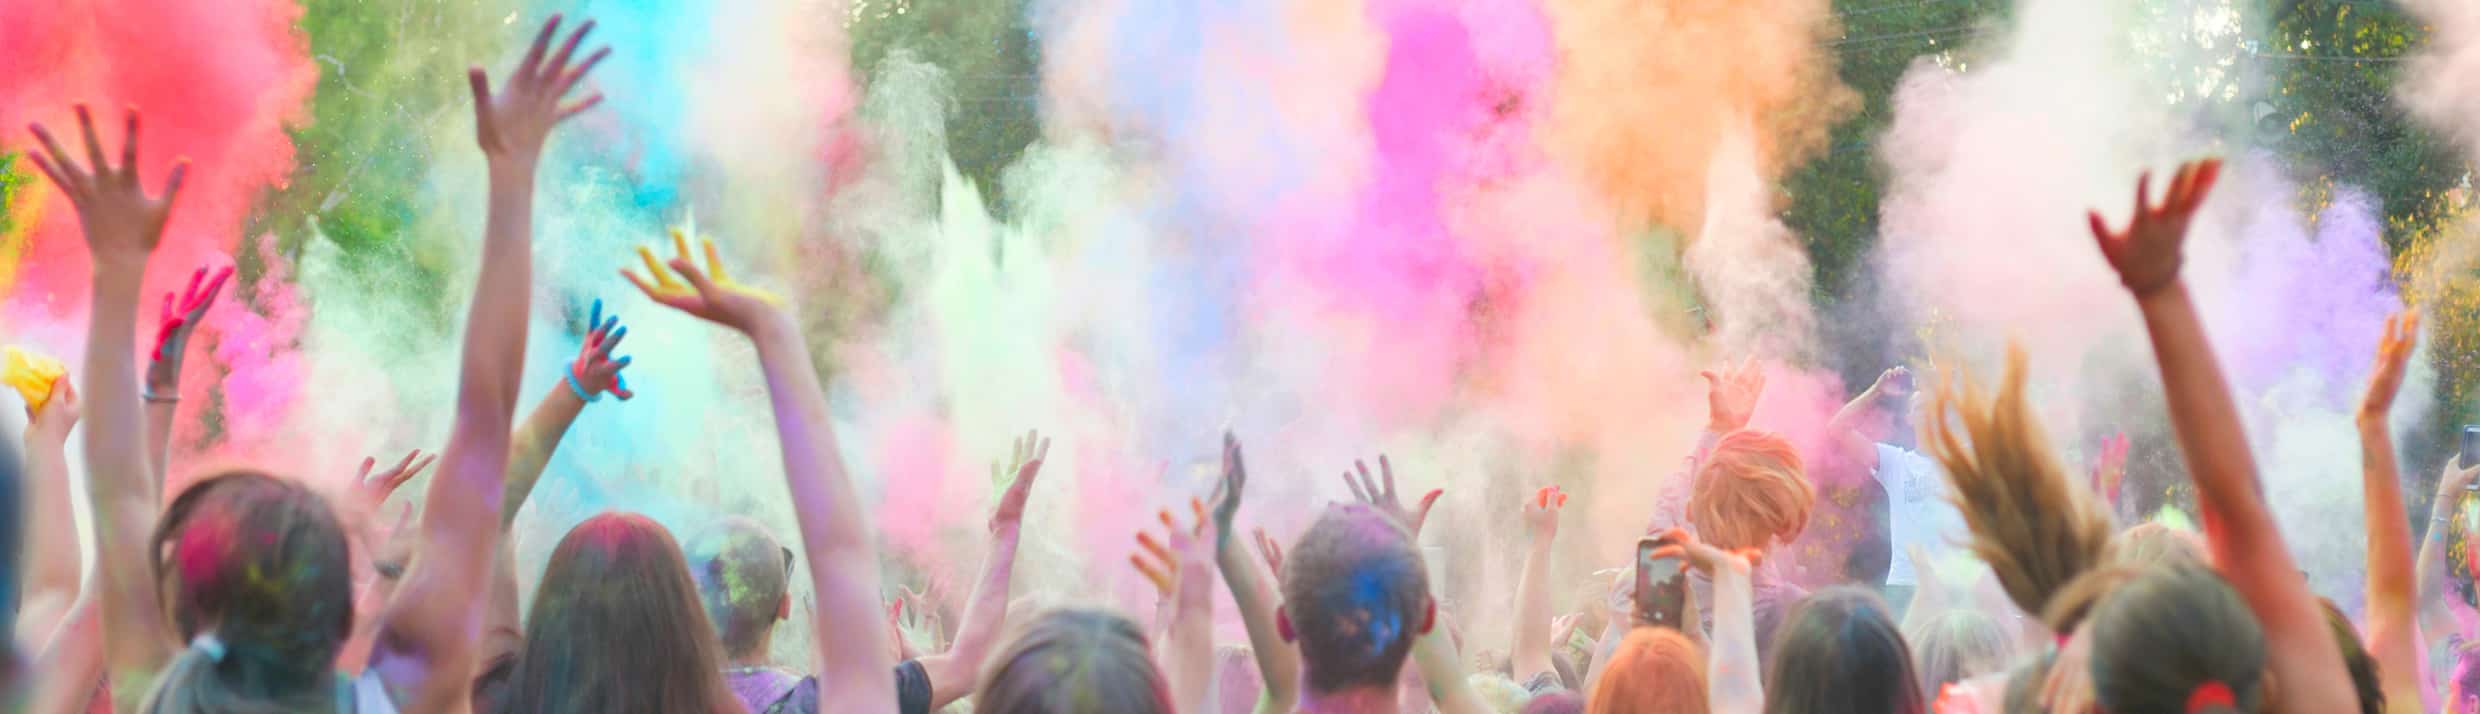 Festivalgangers gooien kleurrijke poeder tijdens een festival de lucht in.